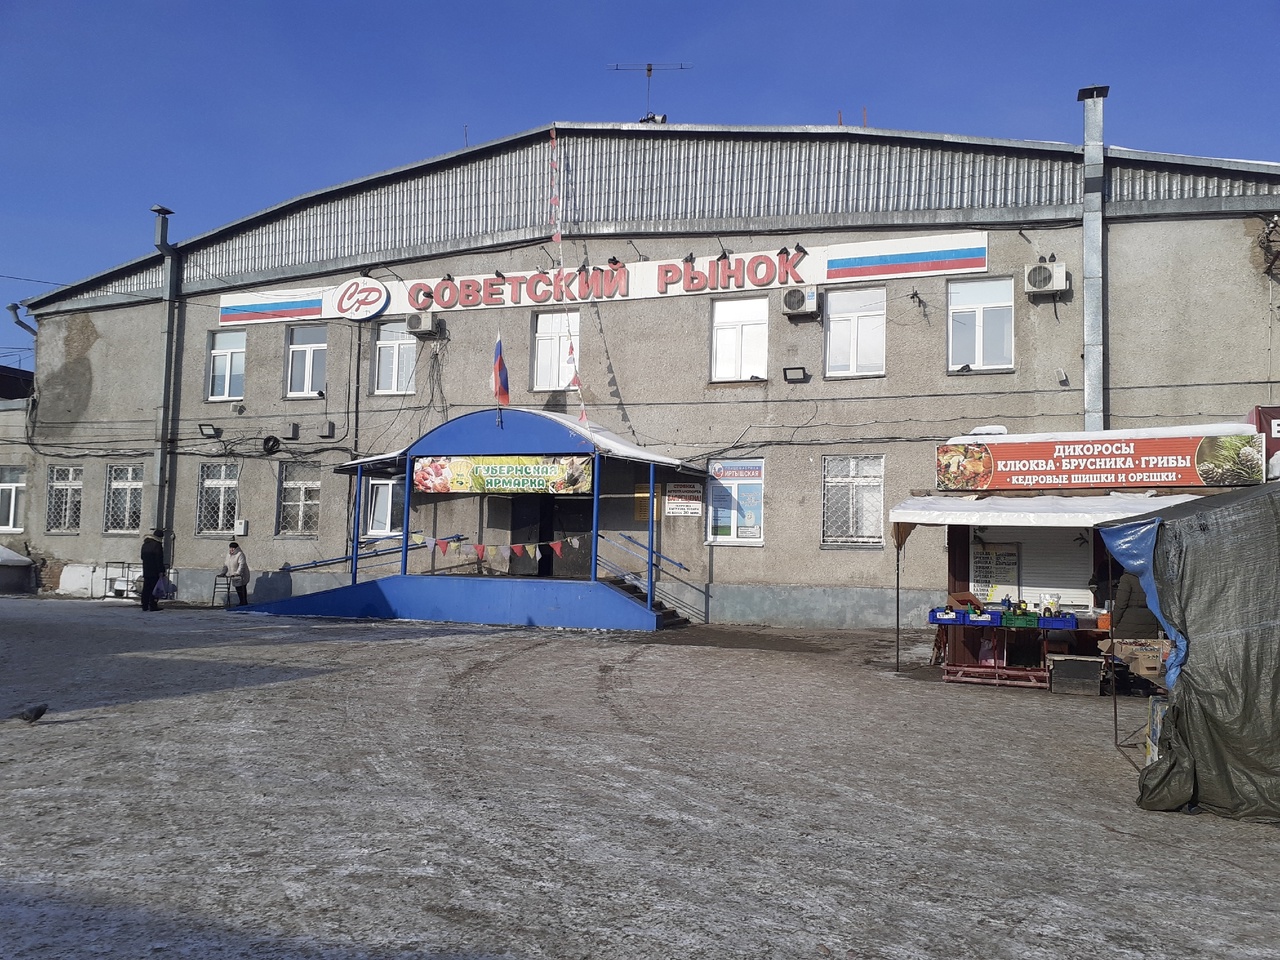 Советский рынок Омска внезапно передумали сдавать в аренду #Омск #Общество #Сегодня